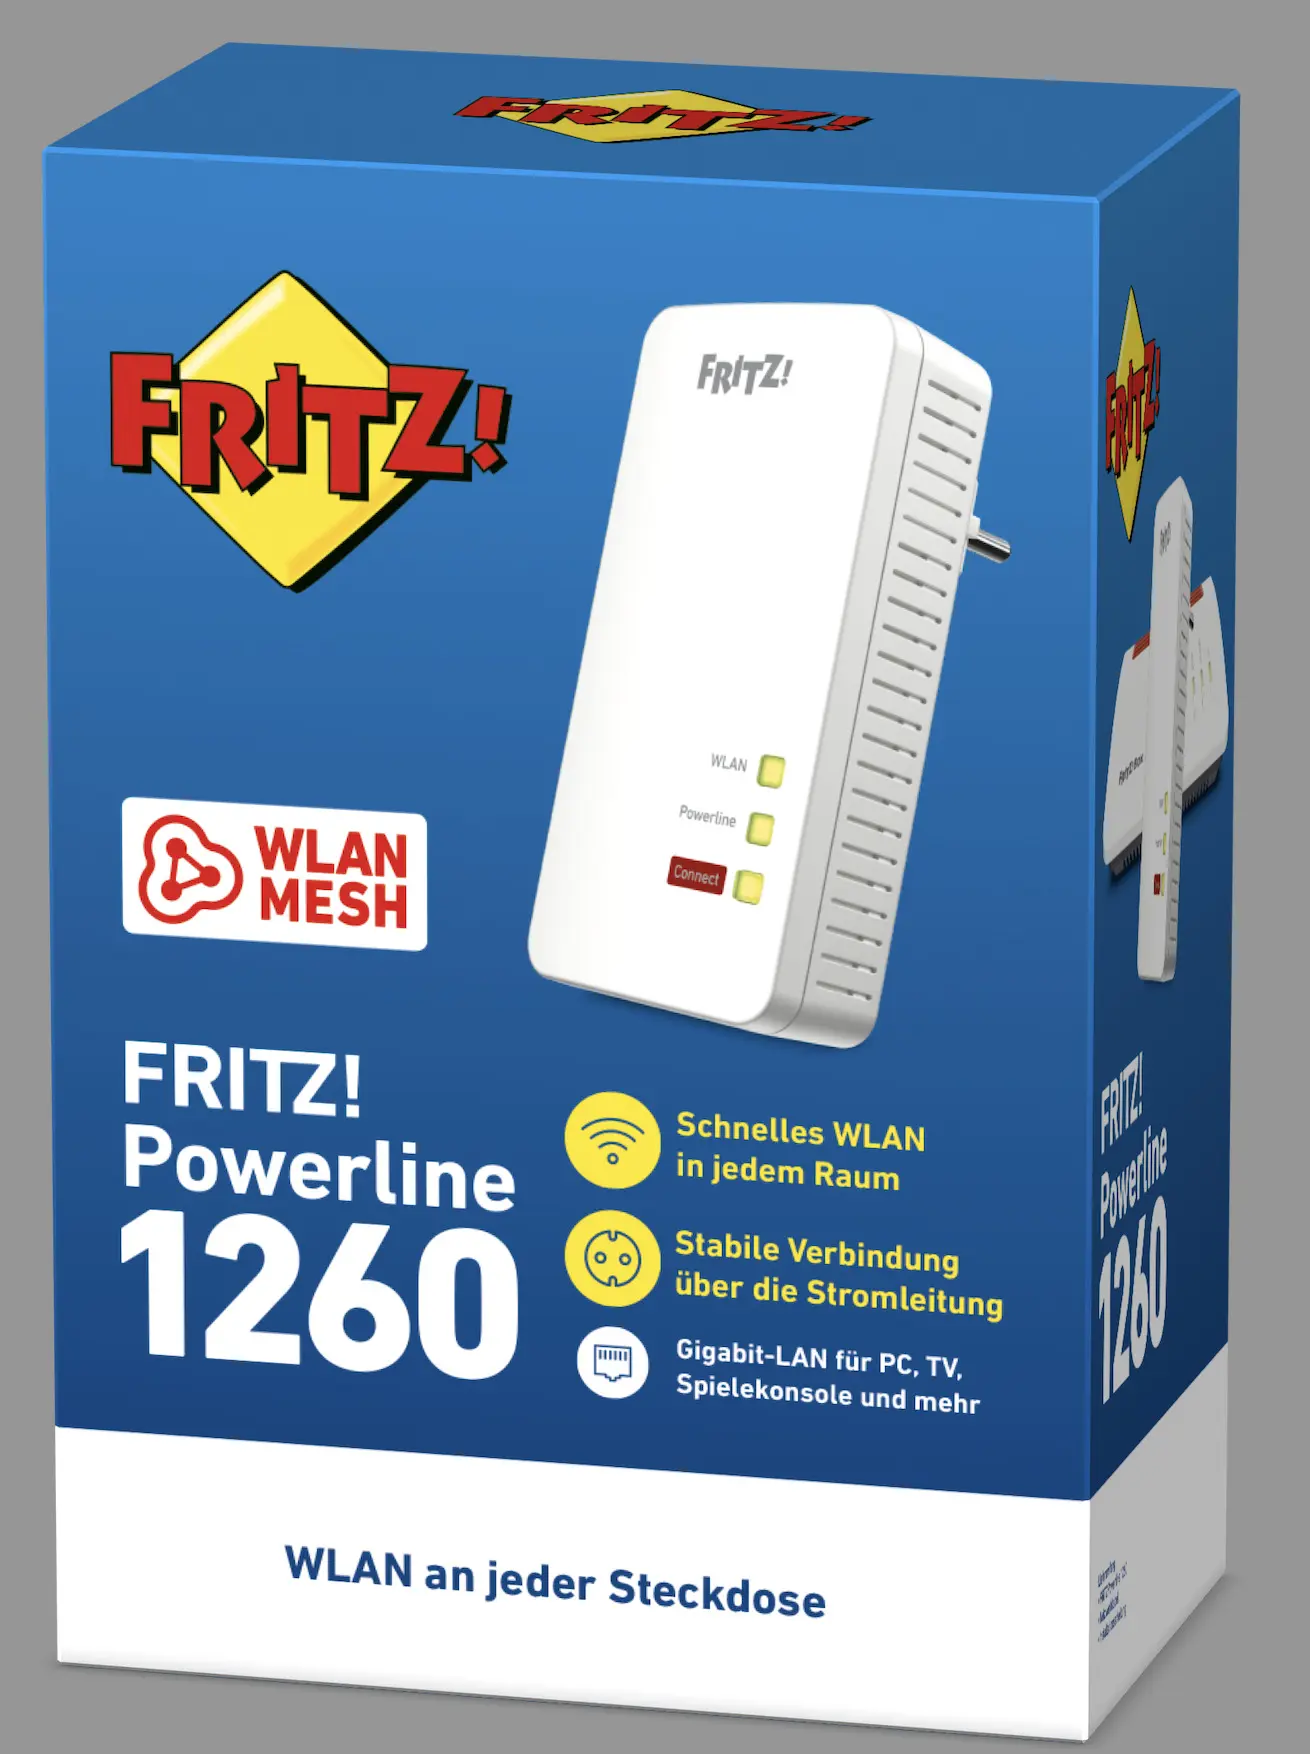 AVM 20002789 FRITZ!Powerline 1260E (Single) - Atlas Vision Store München -  Der TV Fachhändler des Jahres 2017 Video Magazin